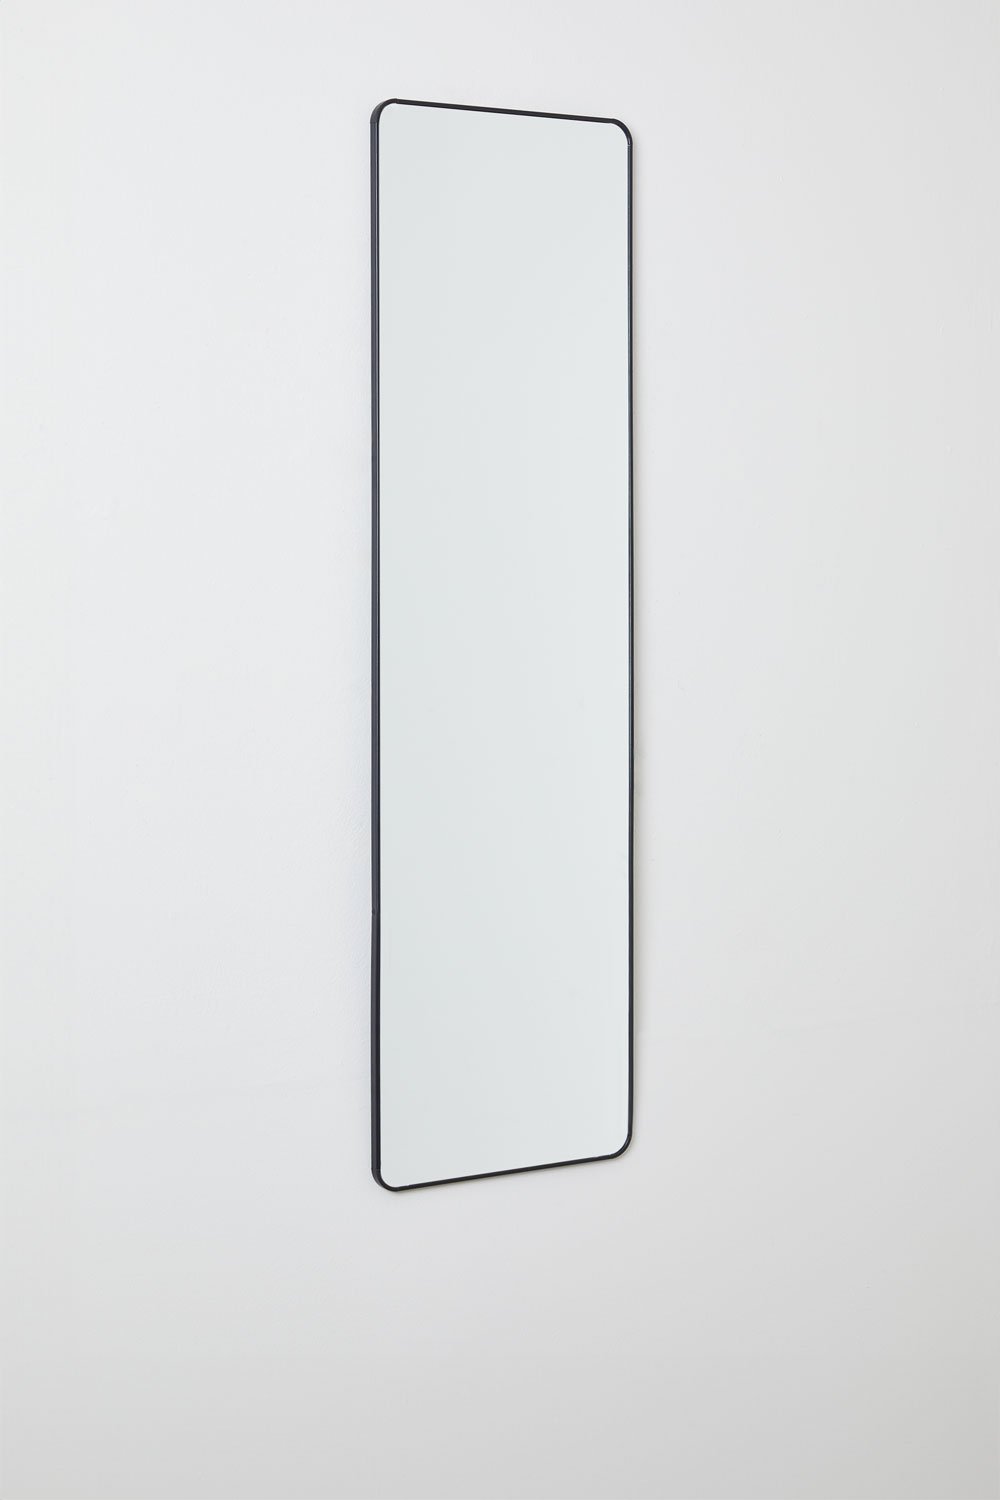 Specchio da parete rettangolare in alluminio (35x120 cm) Sadint, immagine della galleria 2